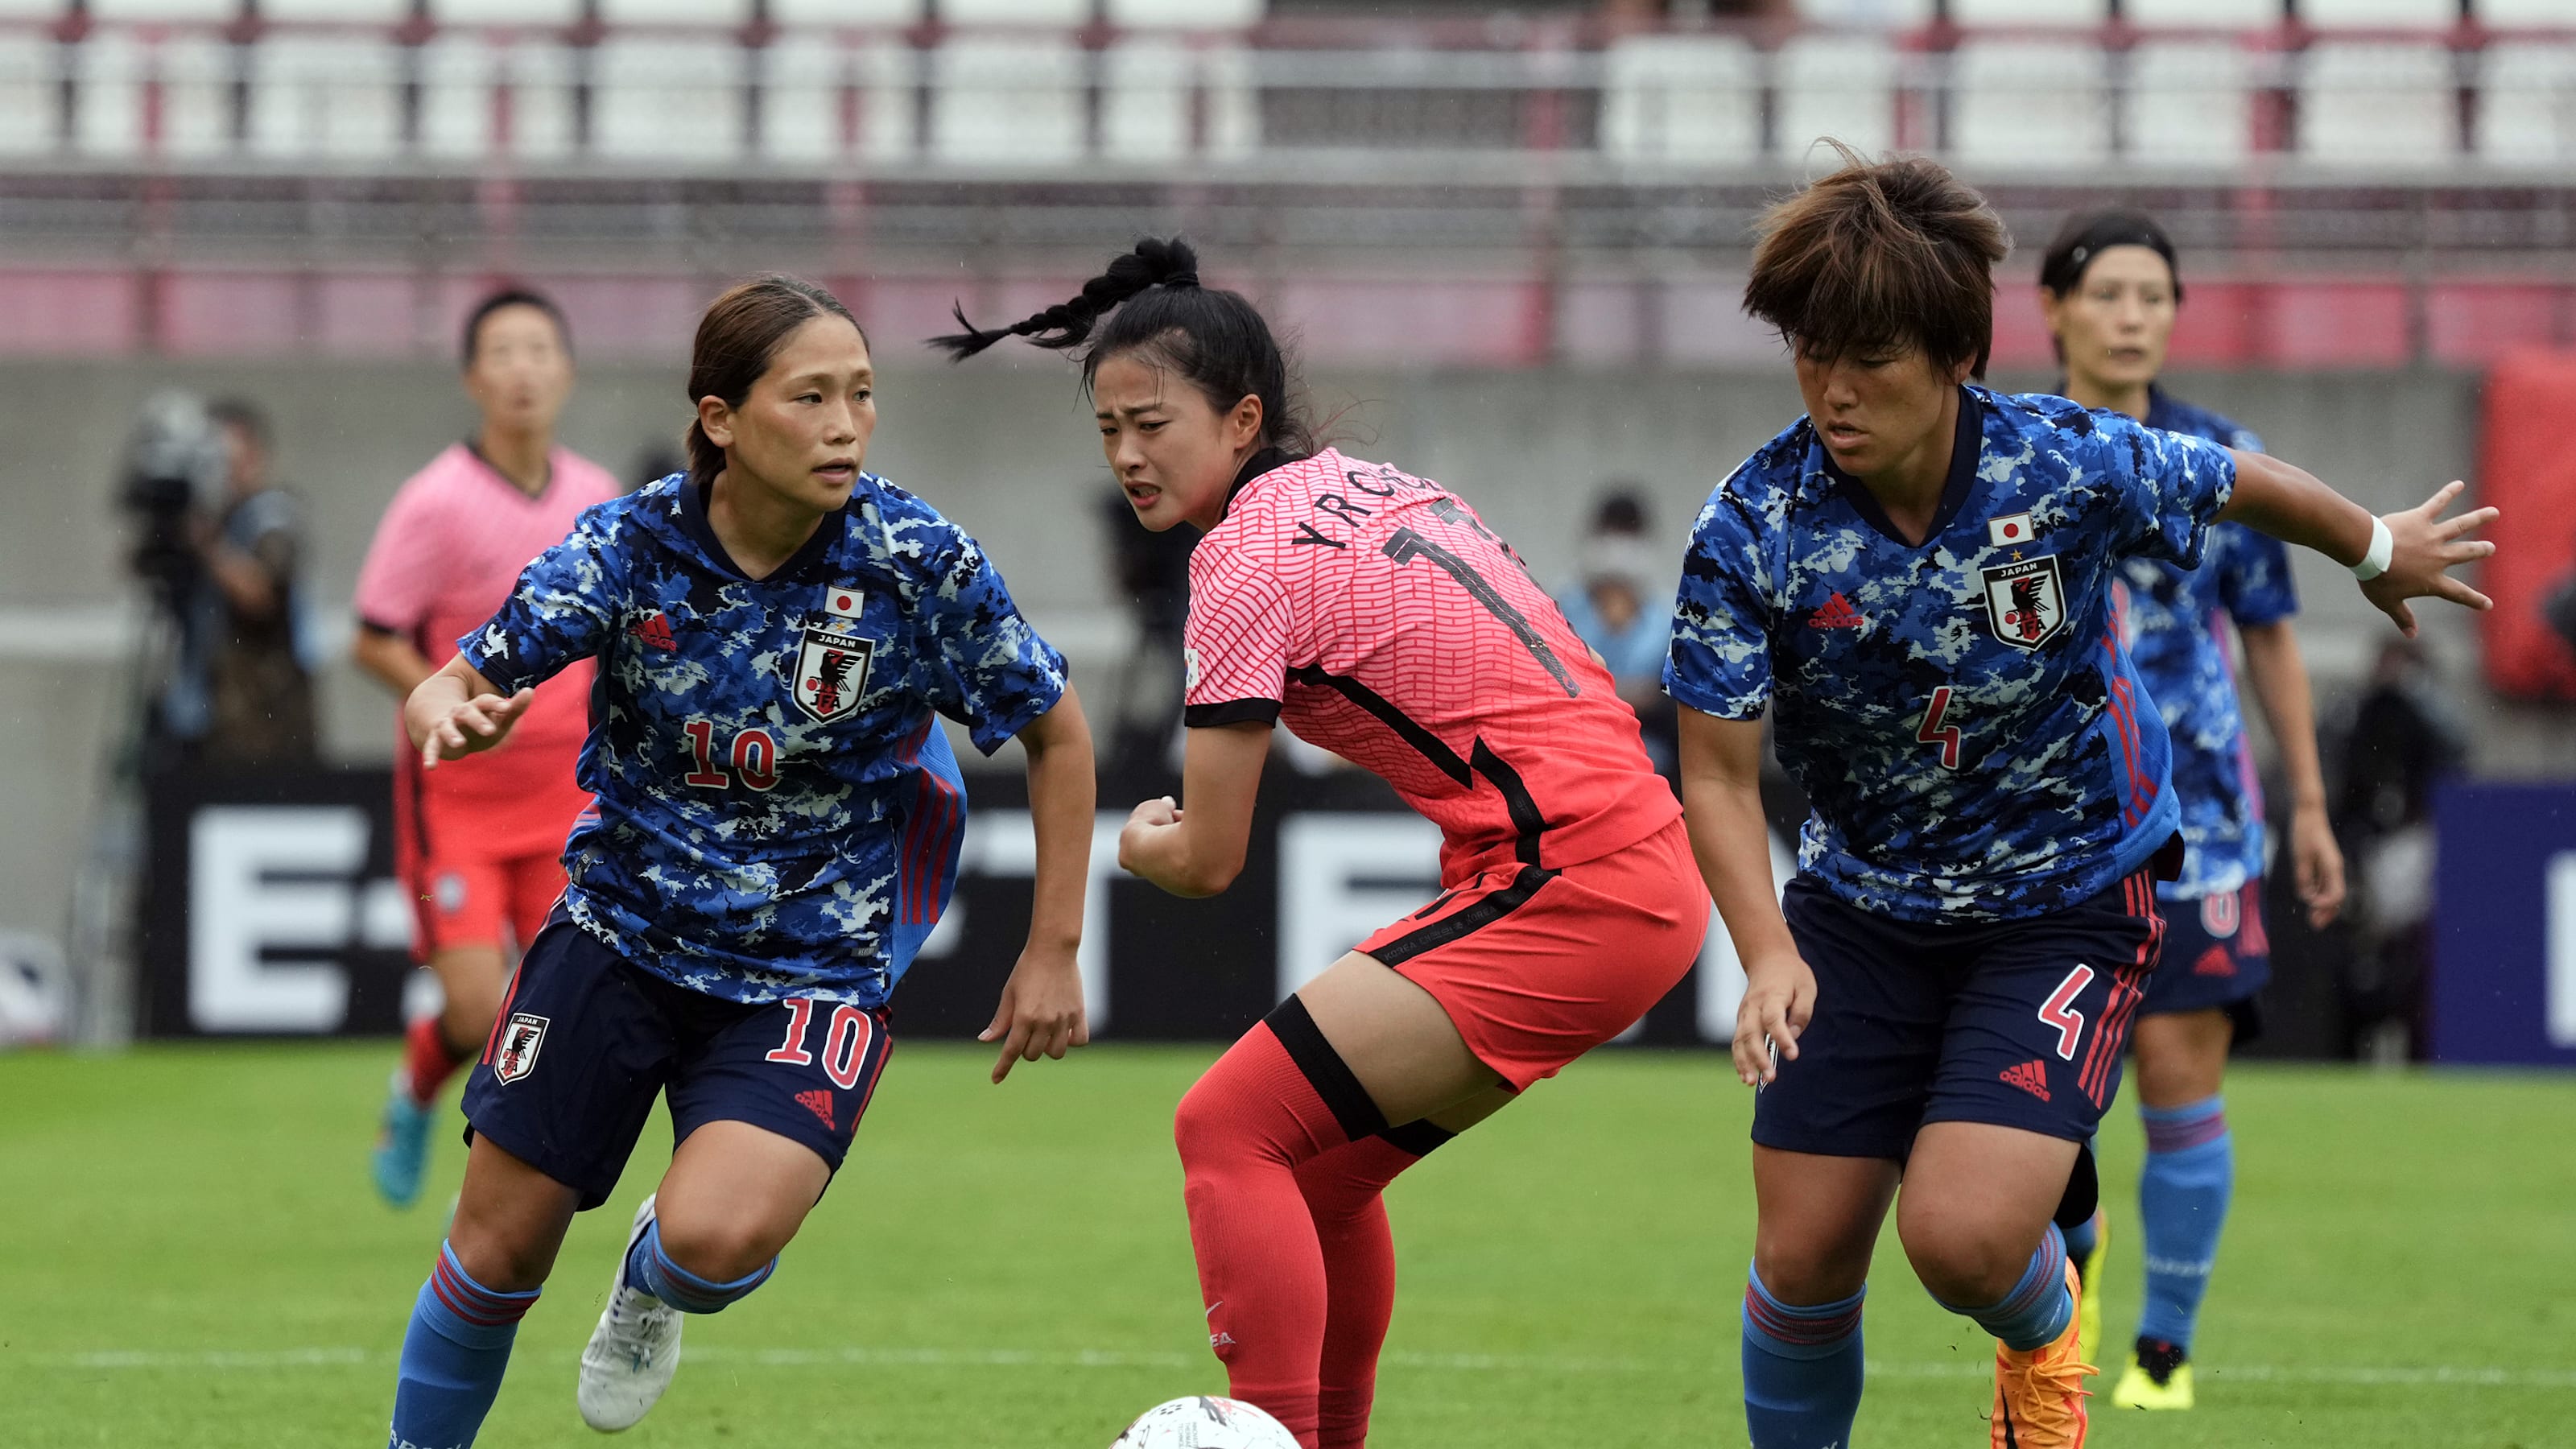 7月23日 Eaff E 1サッカー選手権女子 日本 Vs チャイニーズ タイペイの放送予定 なでしこジャパンが連勝を狙う